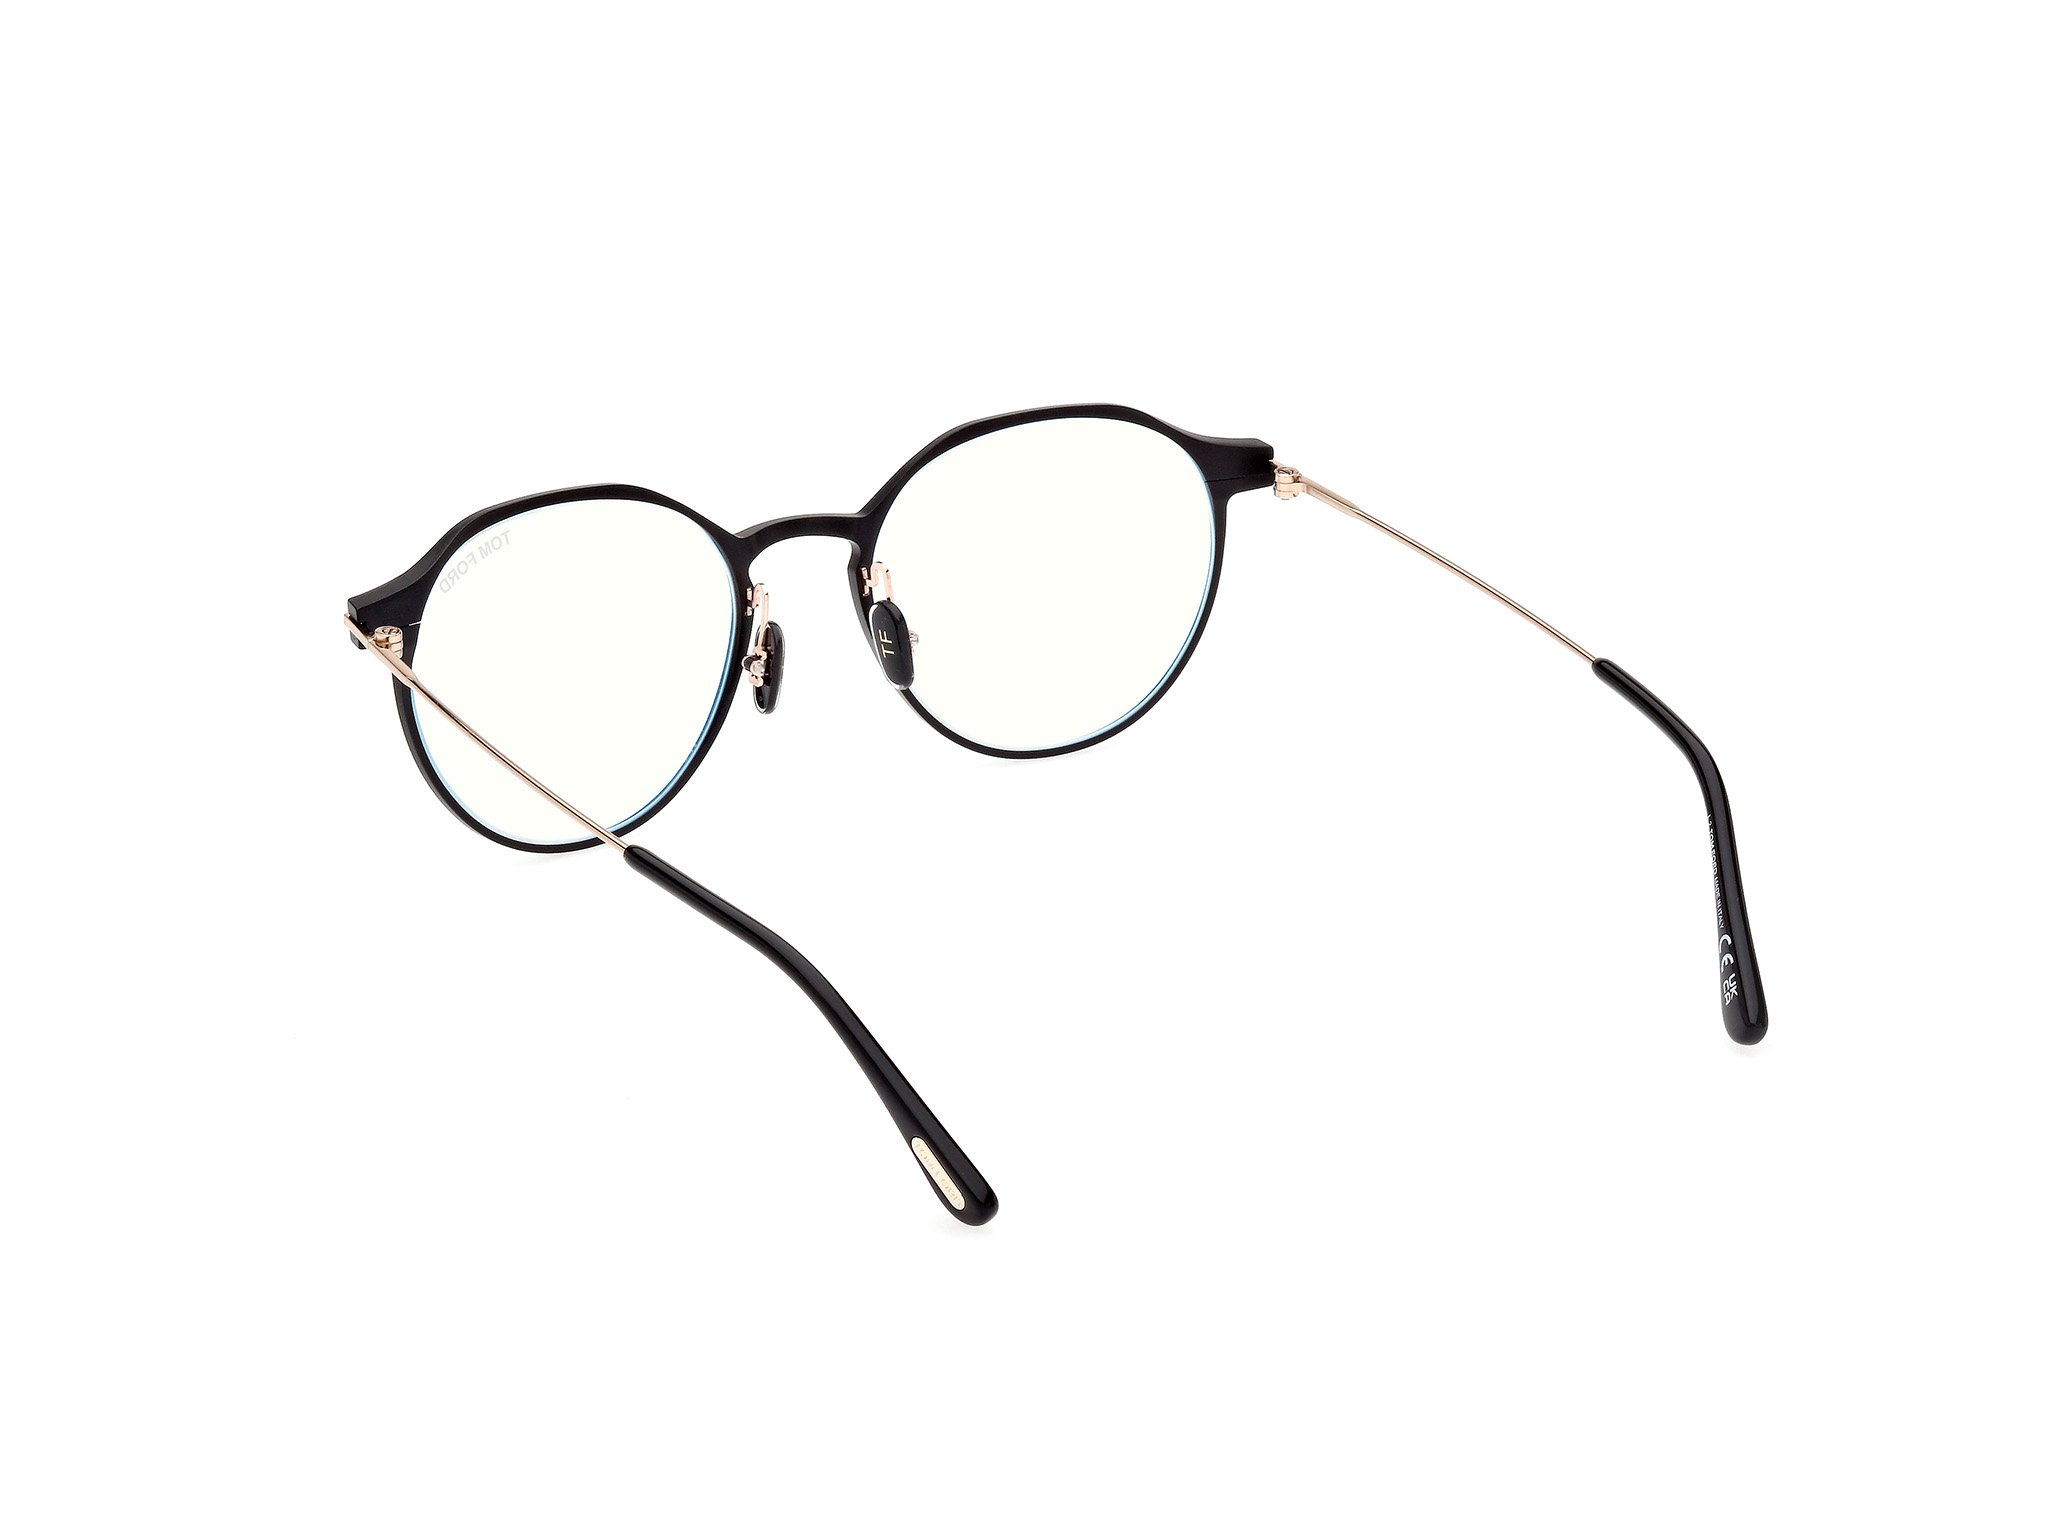 Das Bild zeigt die Korrektionsbrille FT5866-B 002 von der Marke Tom Ford in schwarz/rose gold.